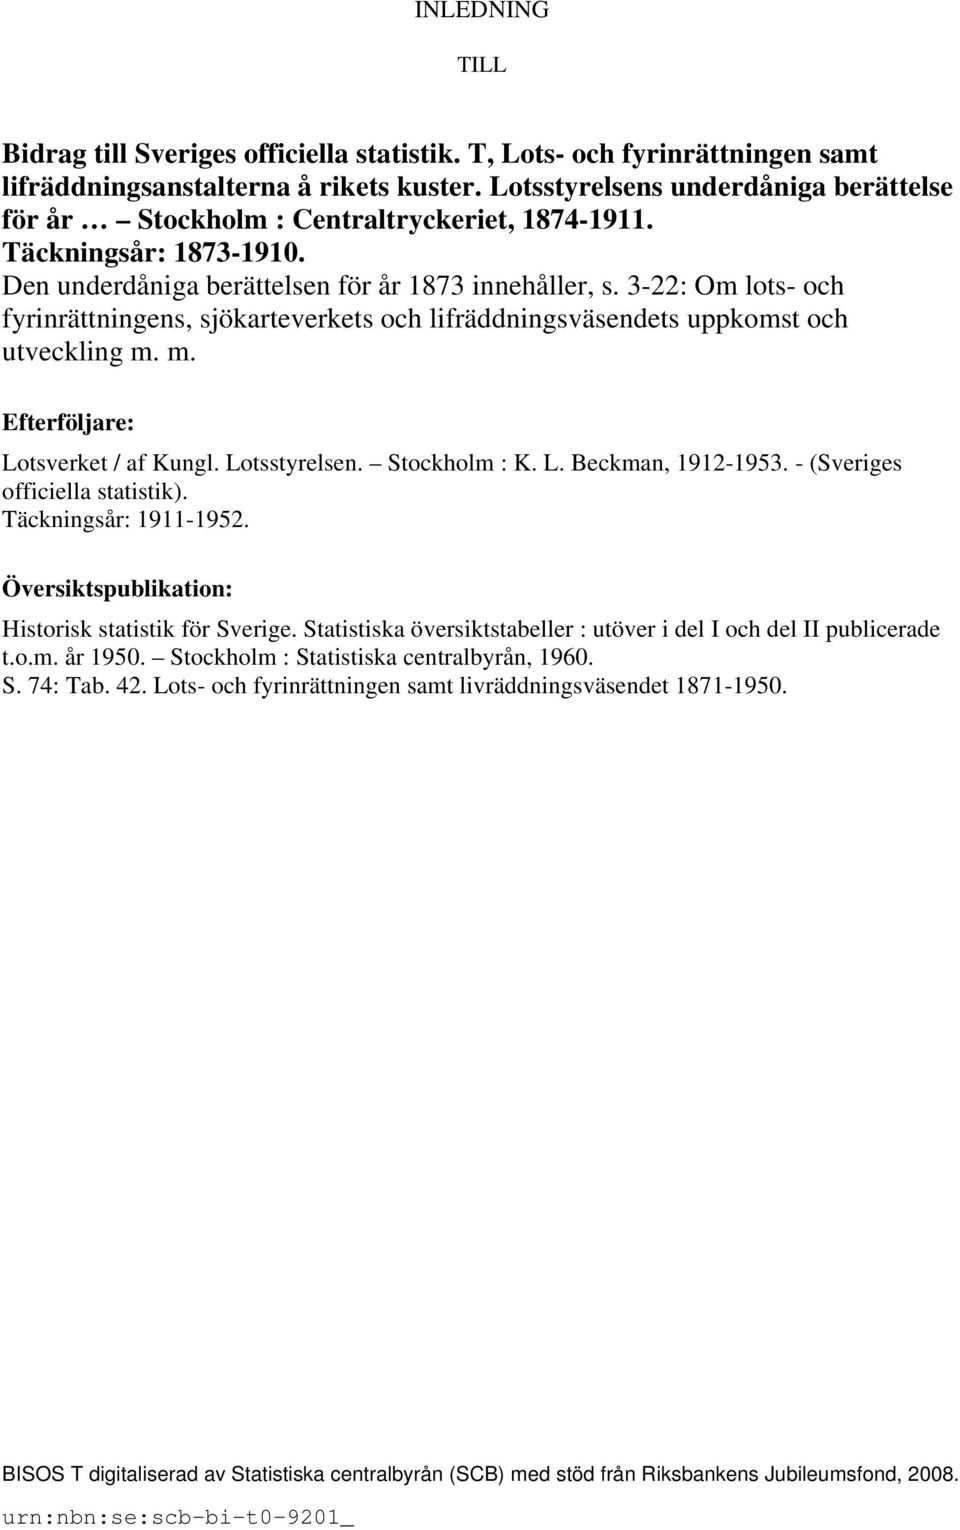 3-22: Om lots- och fyrinrättningens, sjökarteverkets och lifräddningsväsendets uppkomst och utveckling m. m. Efterföljare: Lotsverket / af Kungl. Lotsstyrelsen. Stockholm : K. L. Beckman, 1912-1953.